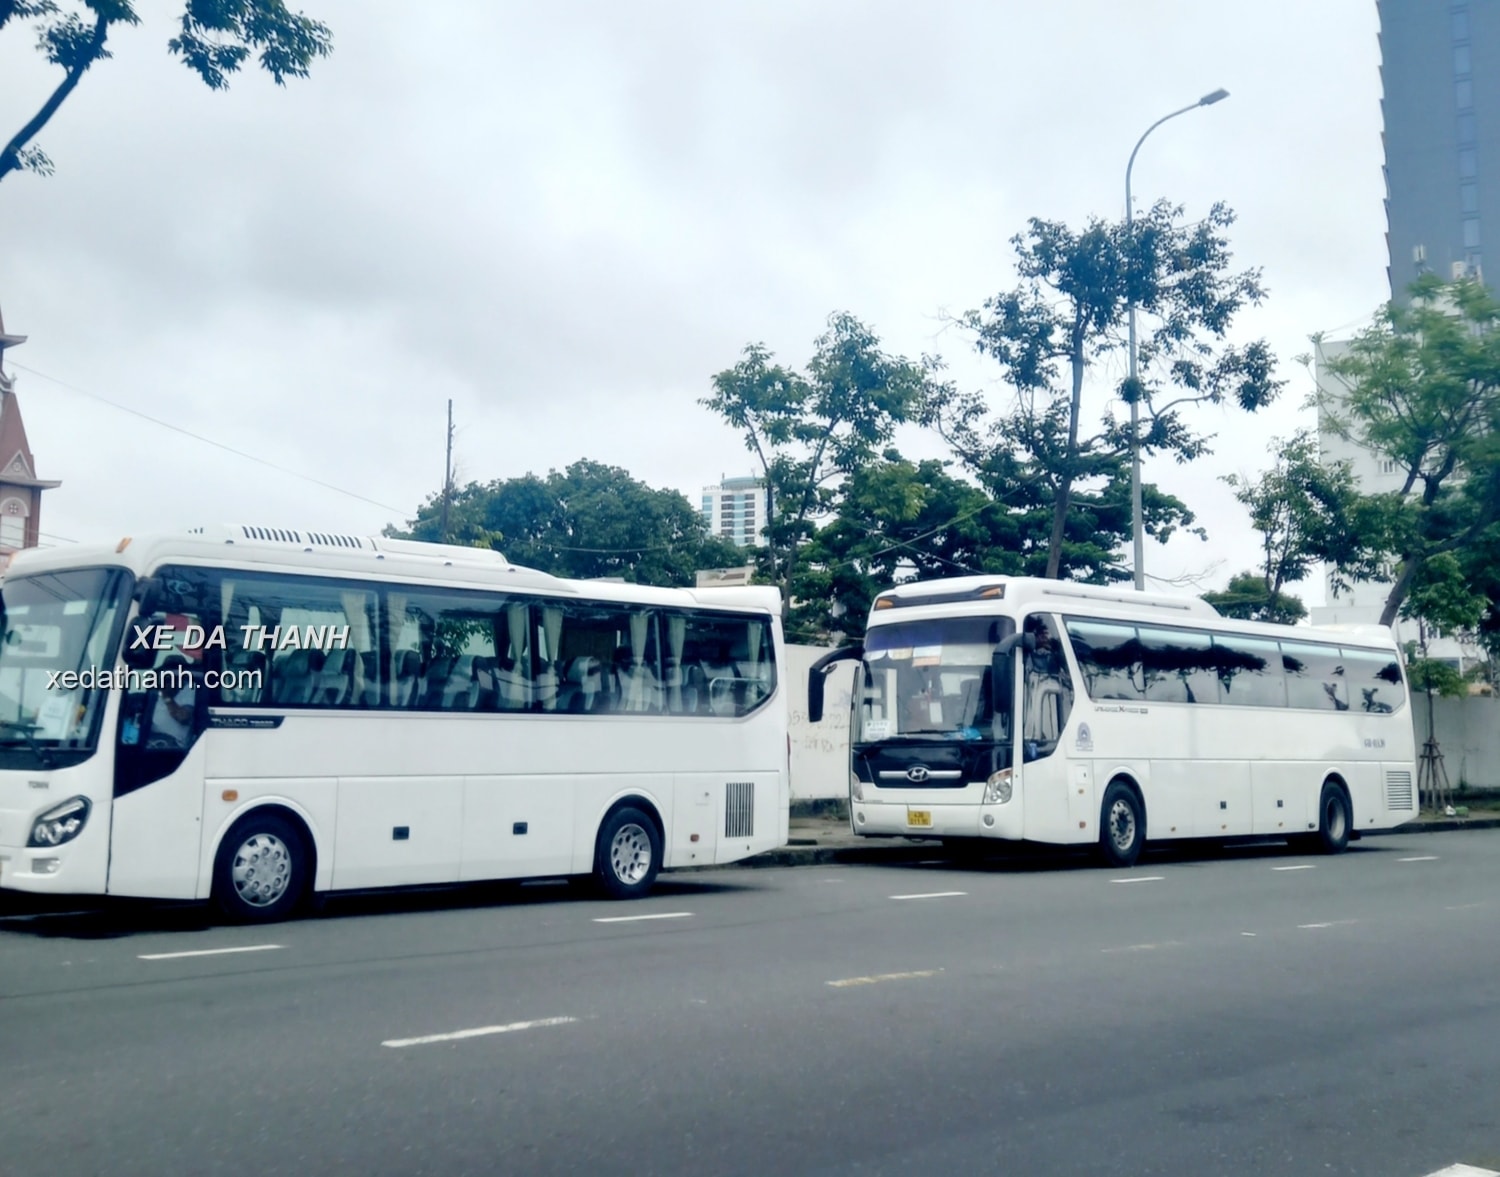 Các dịch vụ thuê xe 4-45 chỗ Hội An - Đà Nẵng - Huế - Quảng Bình.